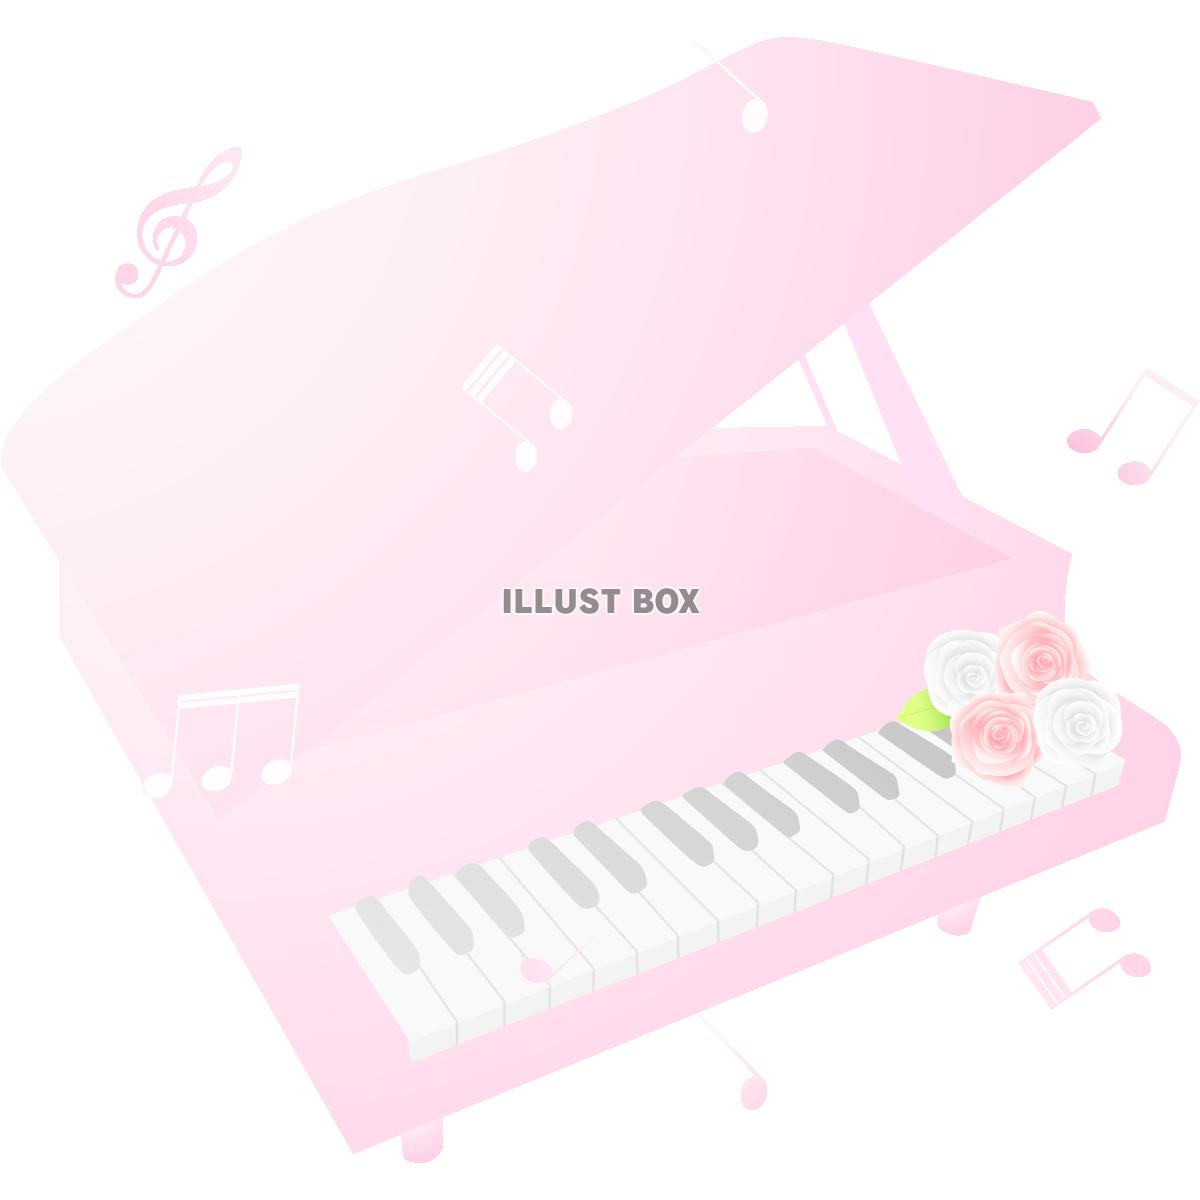 ピンクのピアノ7(png・CSeps）